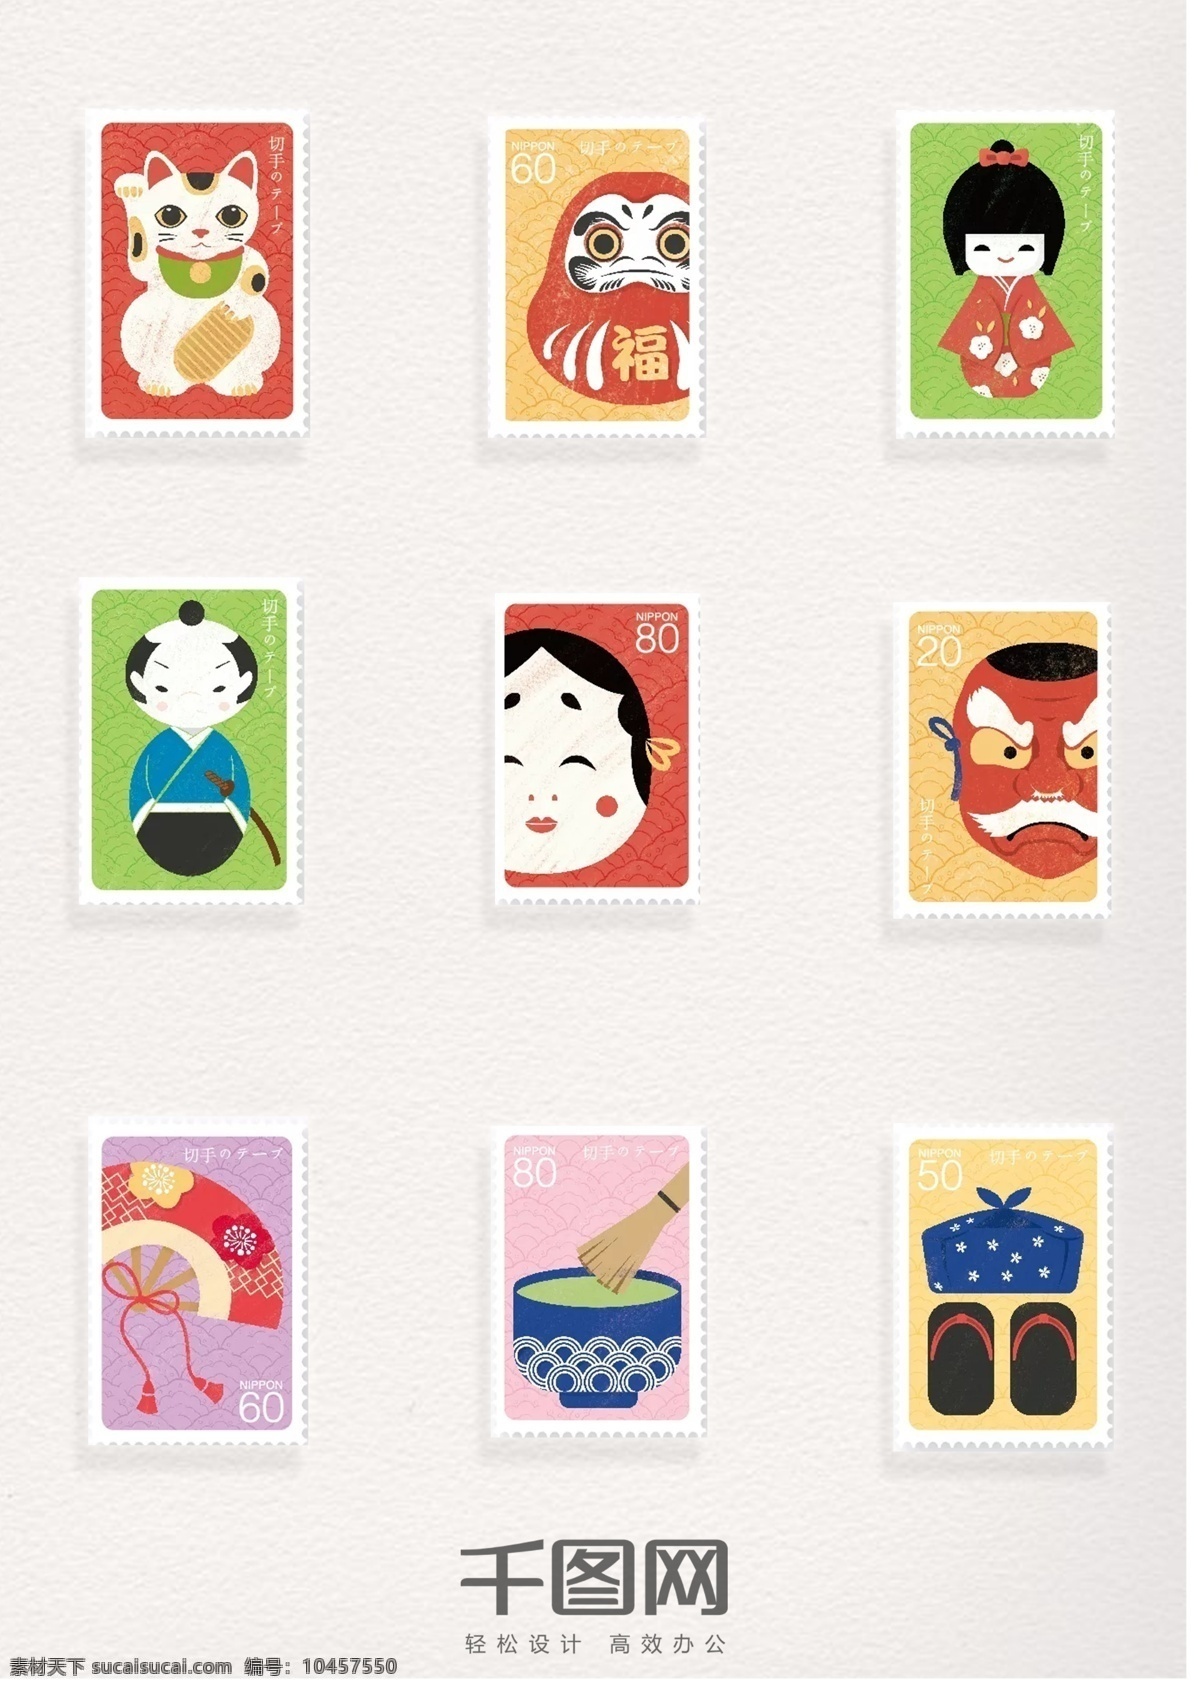 日本 卡通 图案 邮票 元素 日本卡通邮票 创意 创意卡通 邮票元素 邮票图案 邮票装饰元素 彩色邮票